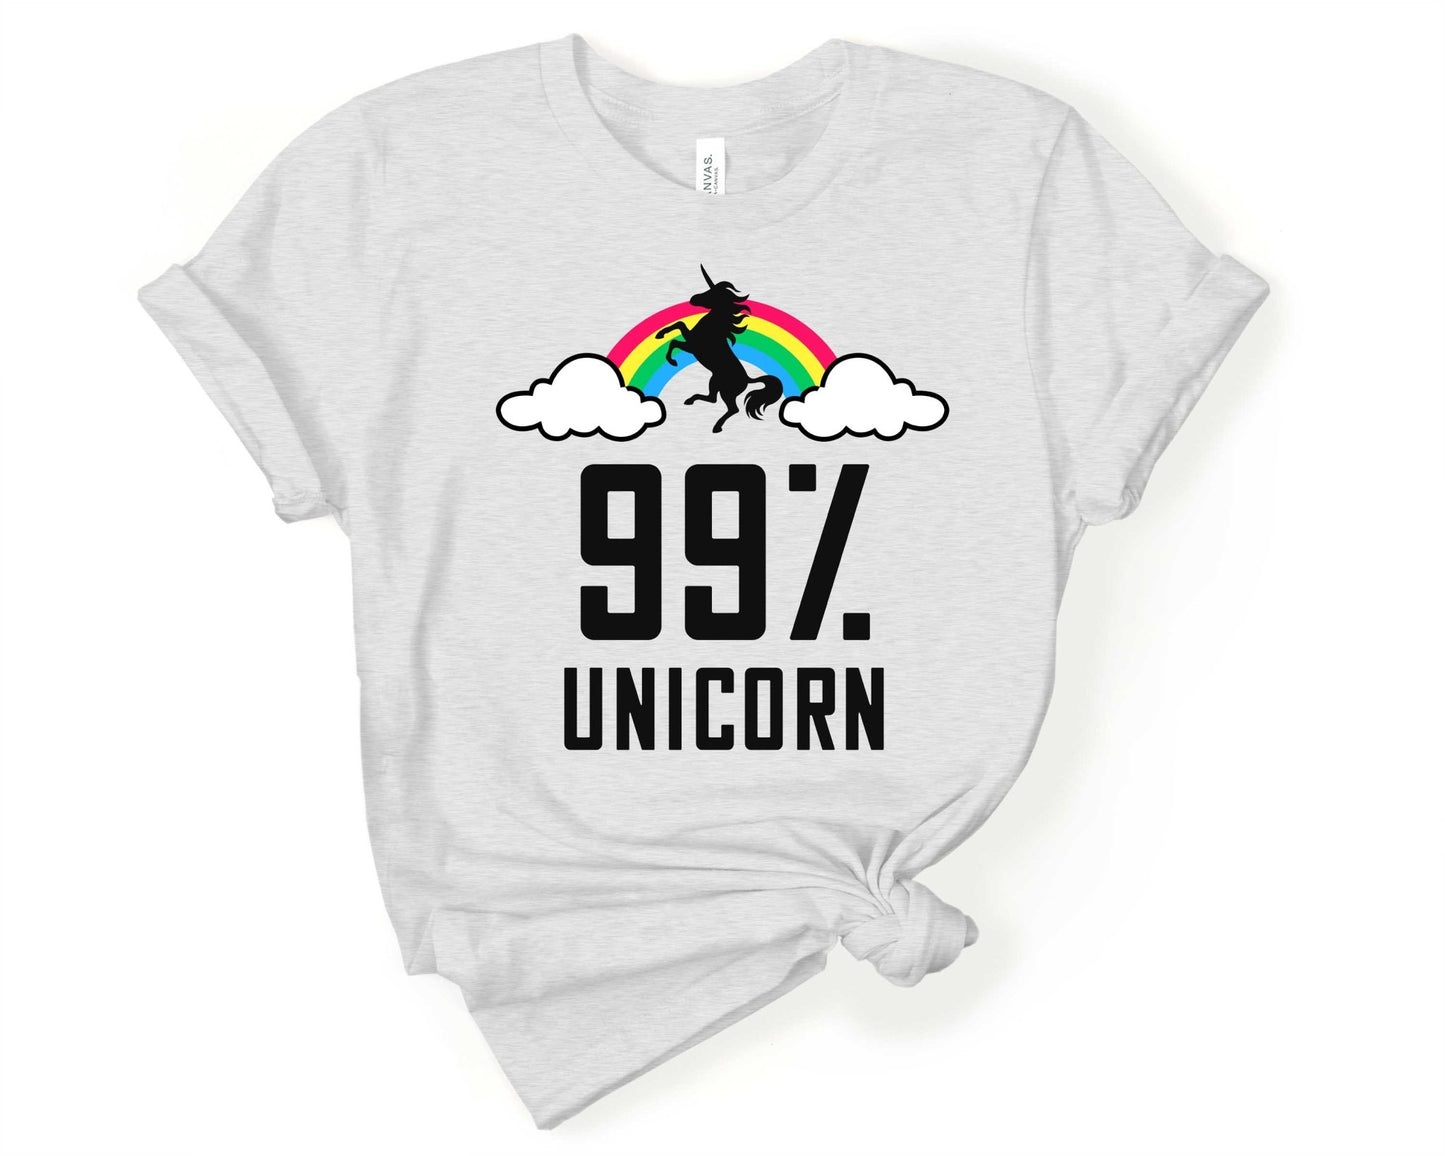 99% Unicorn | T-Shirt for Unicorn Lovers - Gone Coastal Creations - Shirts